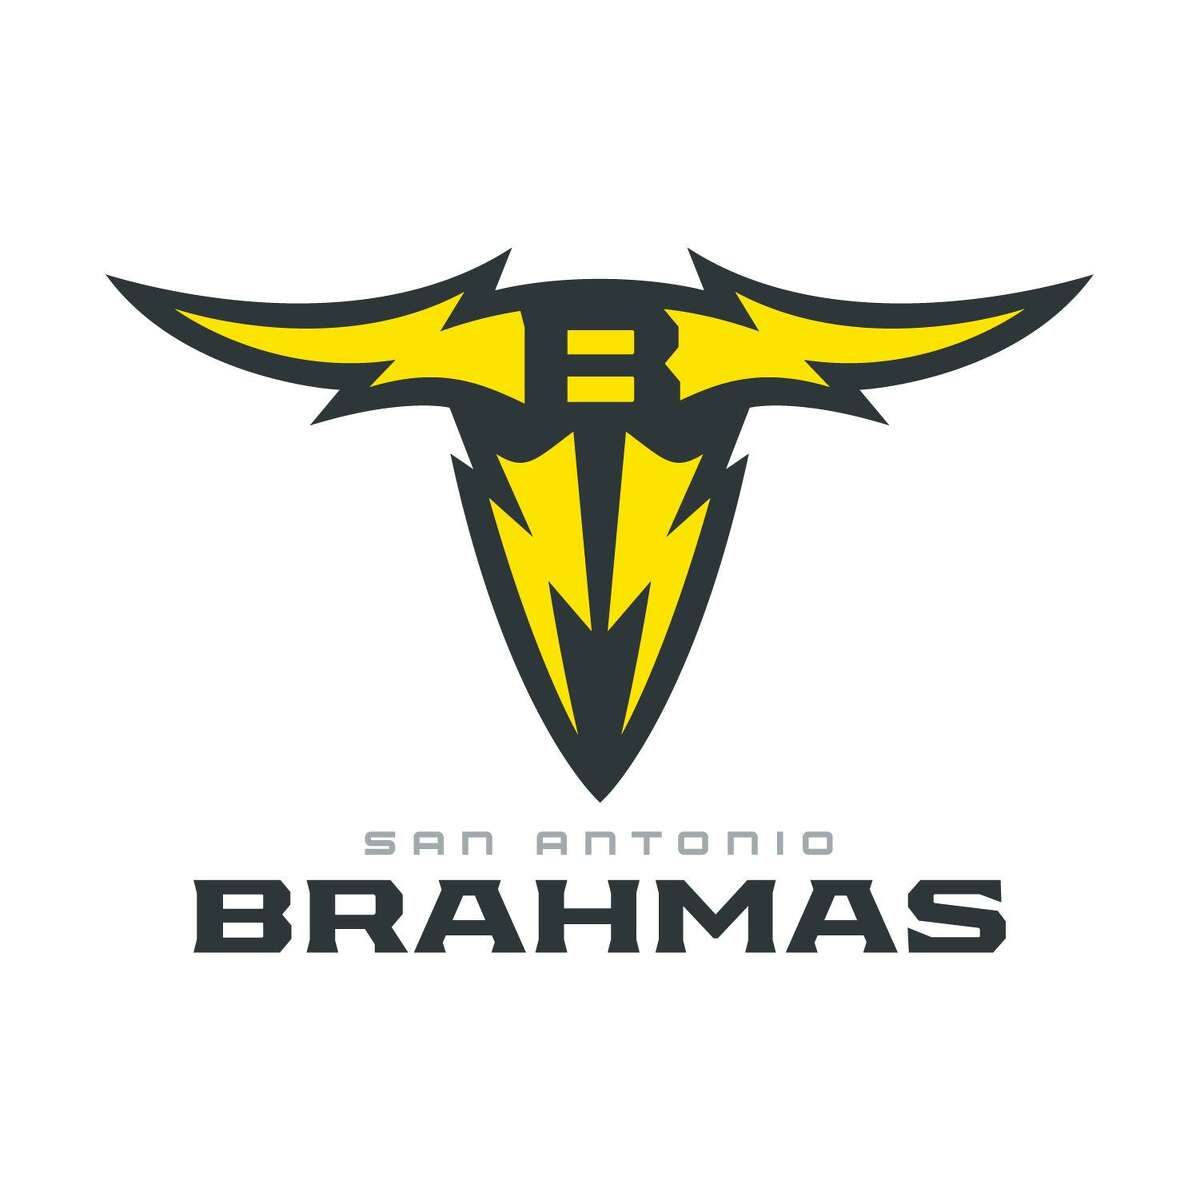 San Antonio Brahmas release schedule for XFL reboot